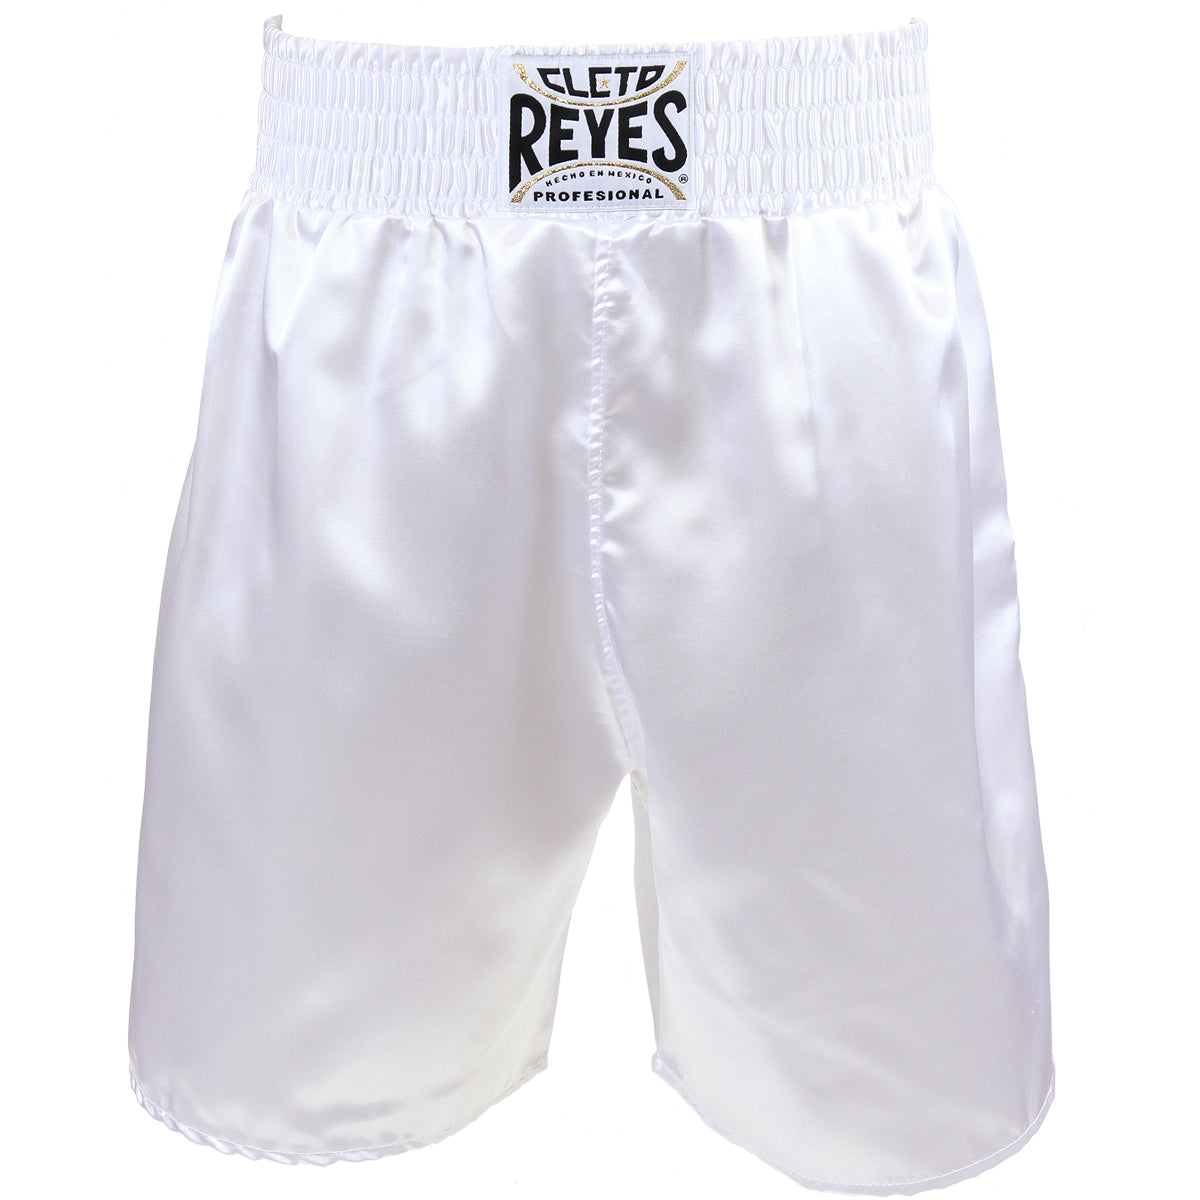 Cleto Reyes Satin Classic Boxing Trunks - XL (44") - White Cleto Reyes